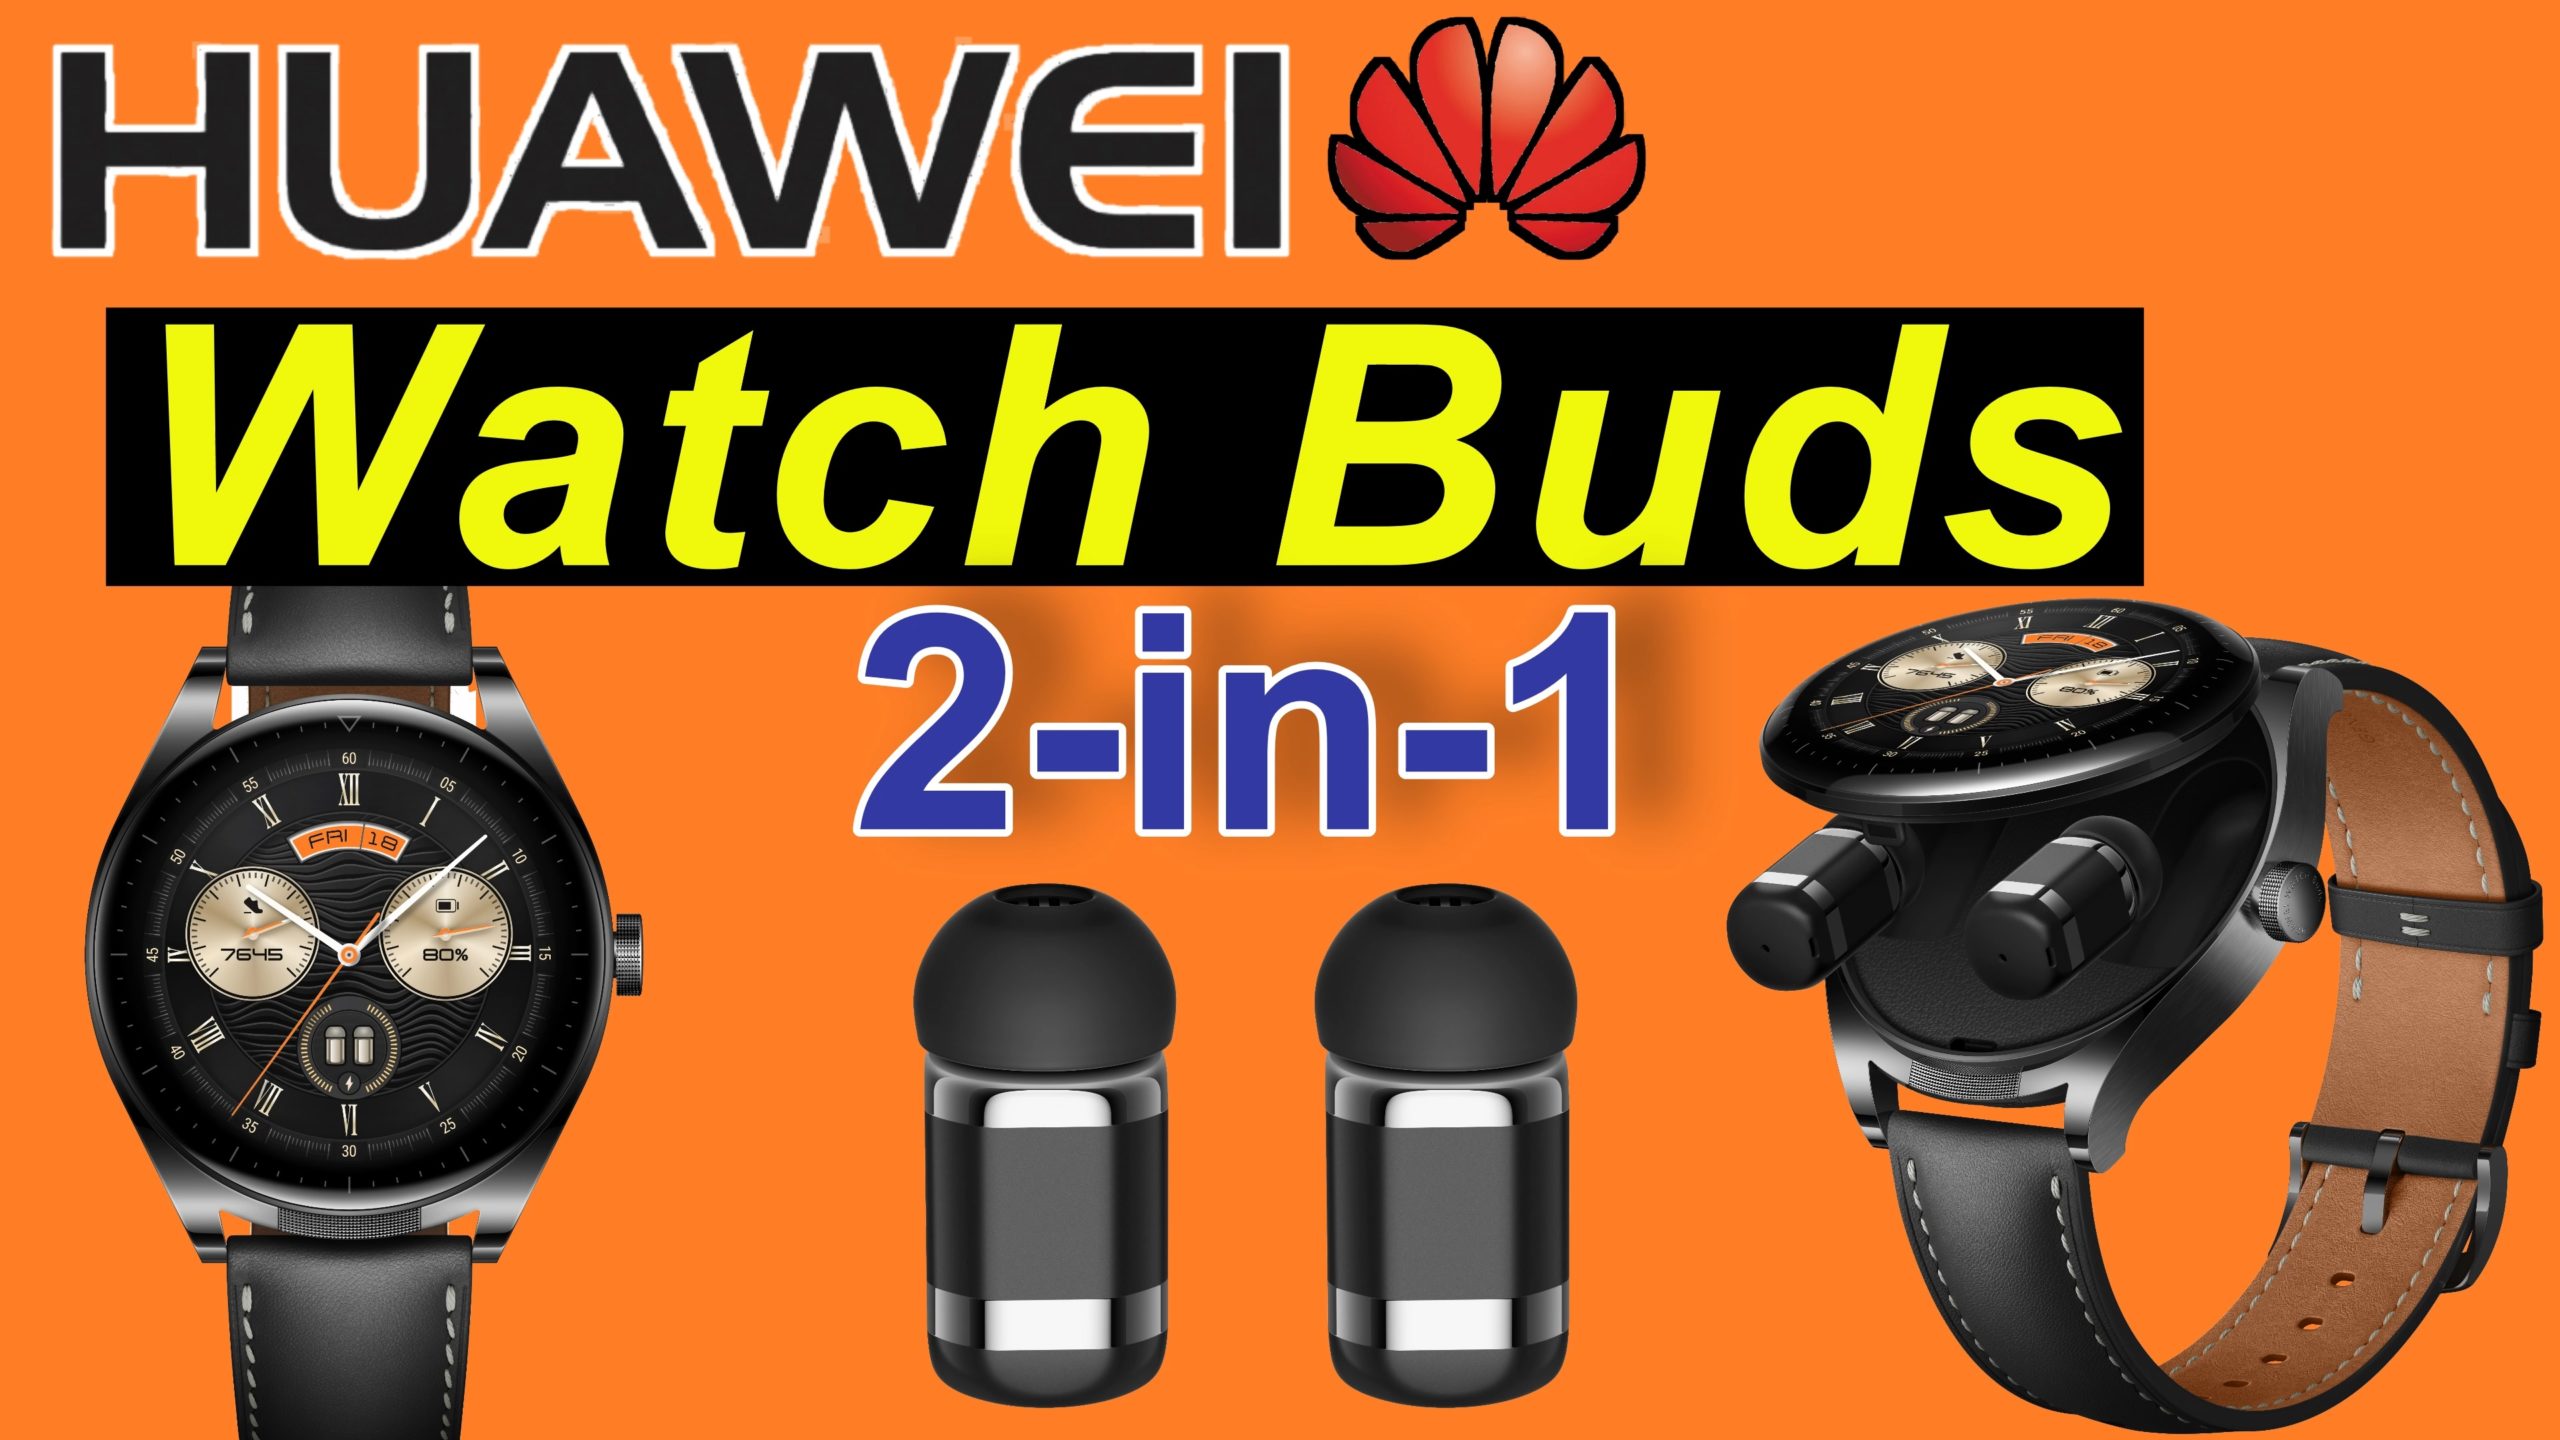 Huawei Watch Buds - Smartwatch und Earbuds, 2-in-1